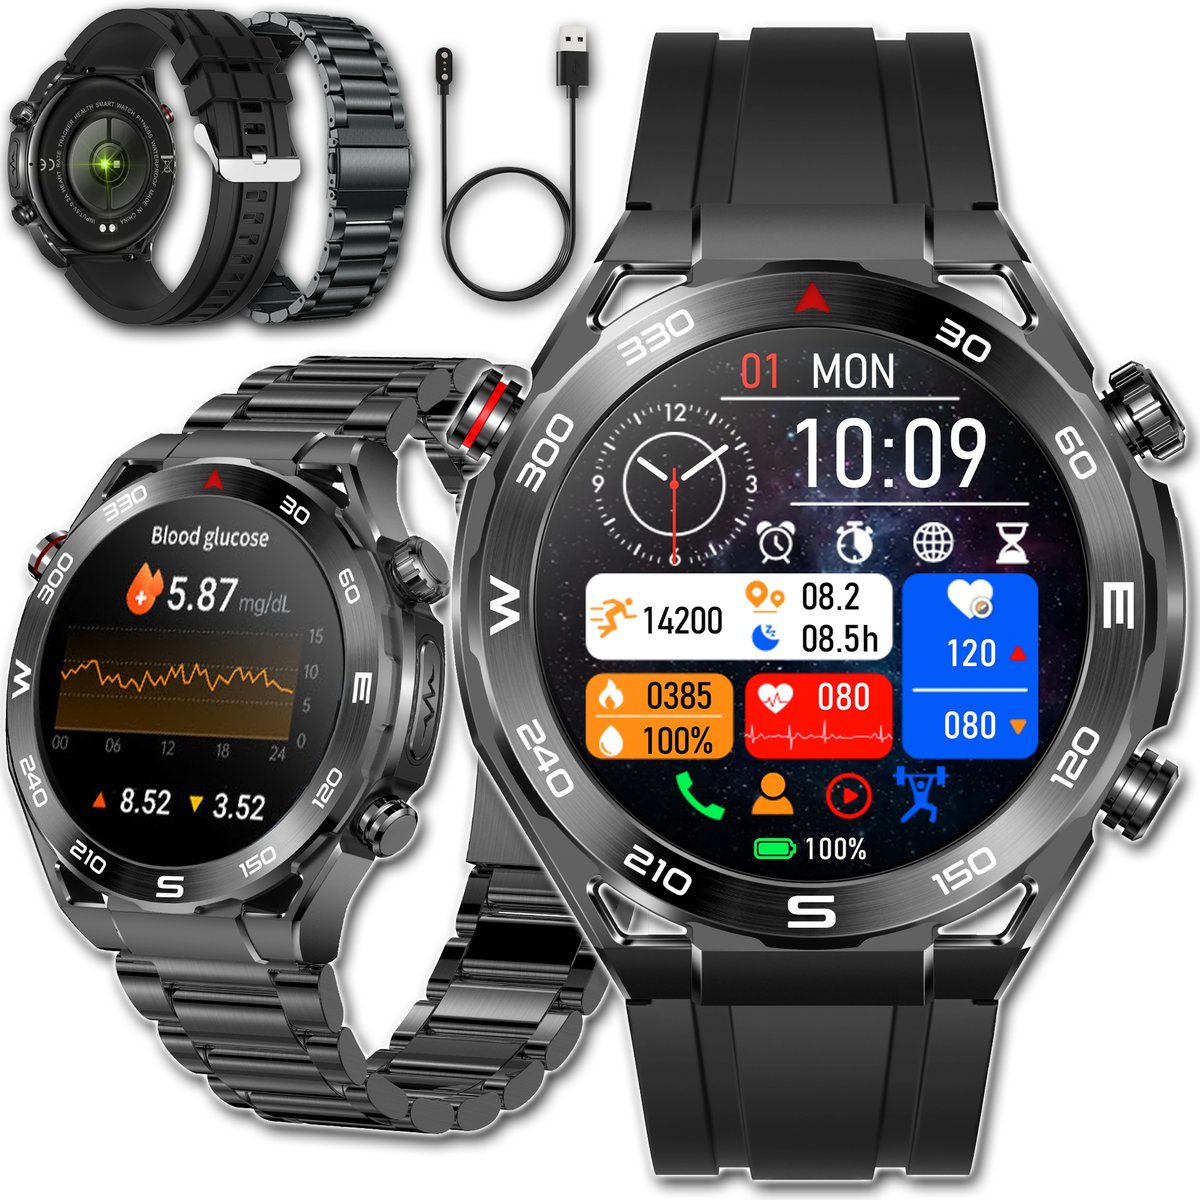 Zdjęcia - Smartwatche Smart Watch SMARTWATCH ZEGAREK MĘSKI Z EKG POMIAR CUKRU PULS CIŚNIENIE ROZMOWY MENU PL 